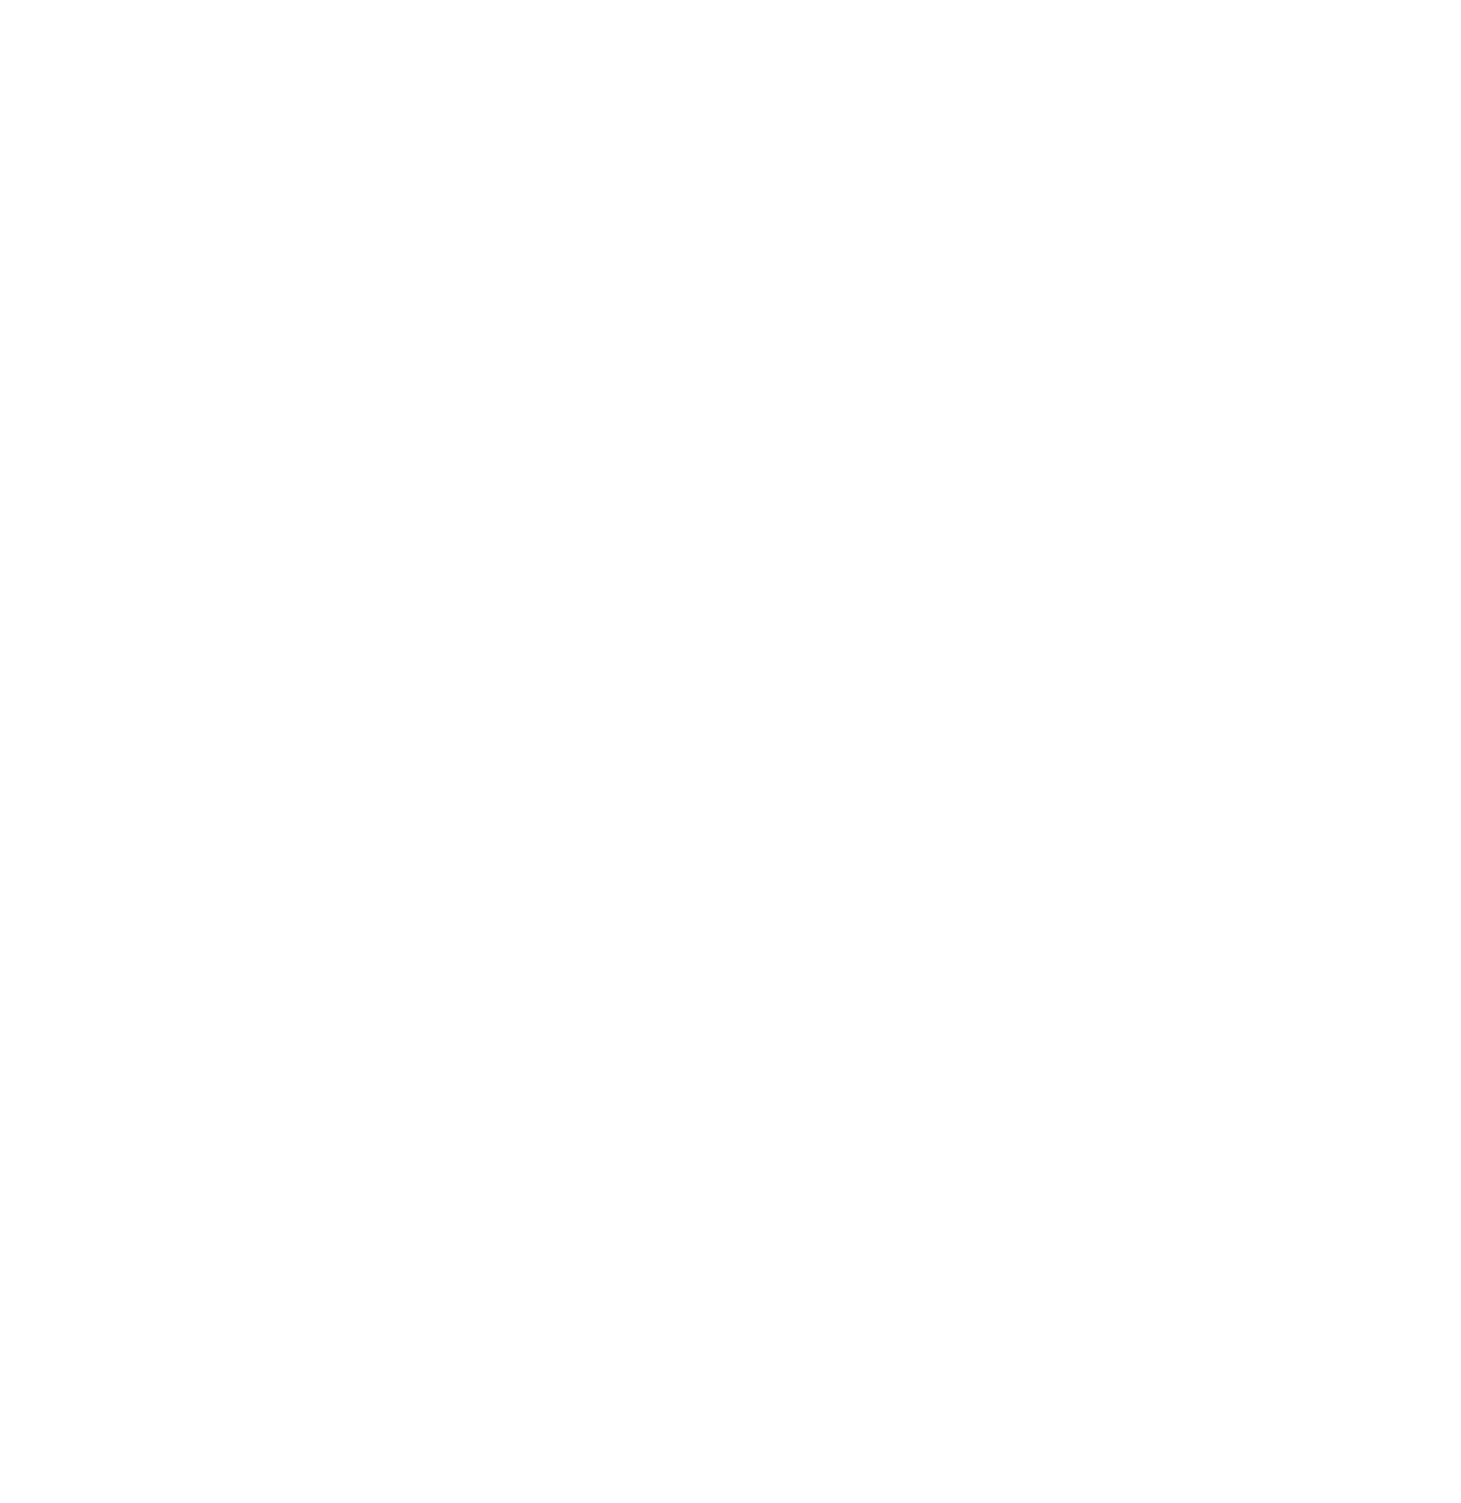 ASICS Corporation logo pour fonds sombres (PNG transparent)